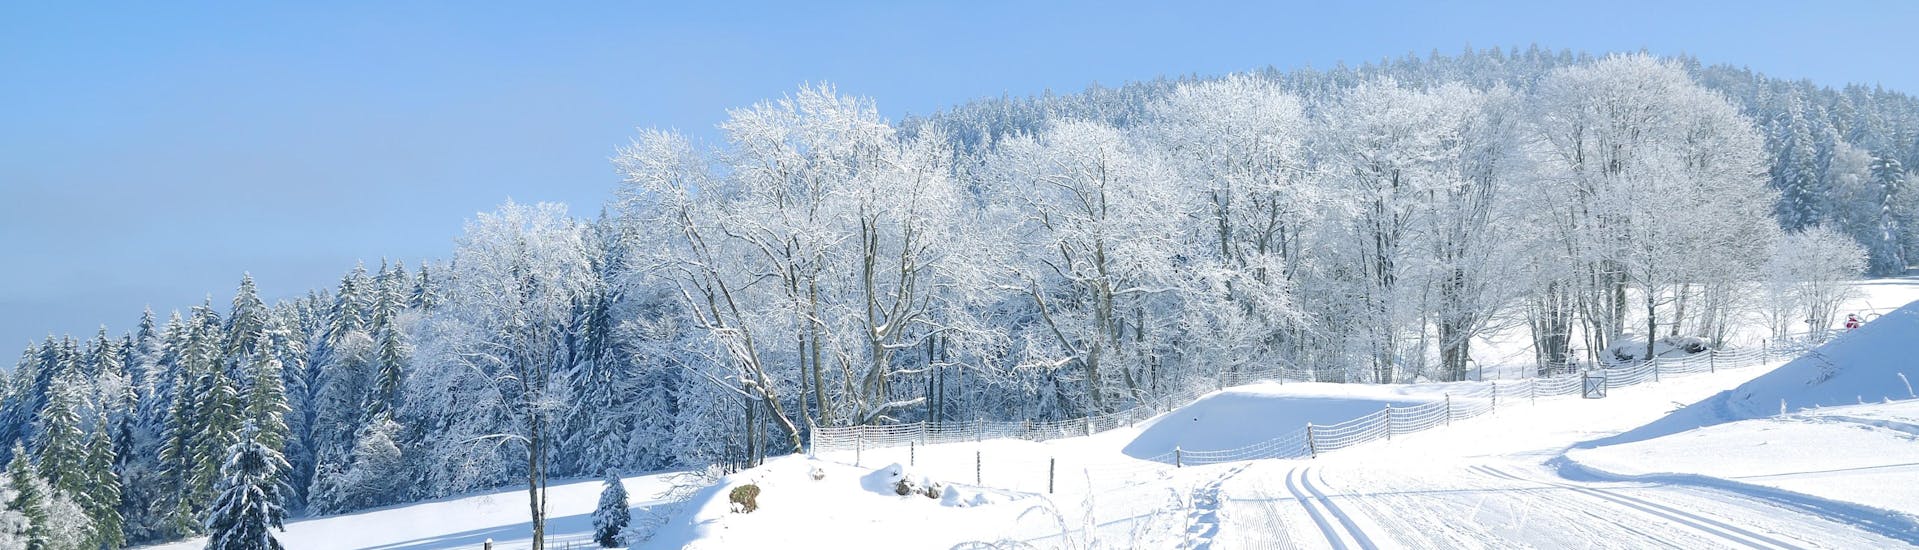 Immagine delle piste da sci della Foresta Bavarese dove è possibile prenotare lezioni di sci.